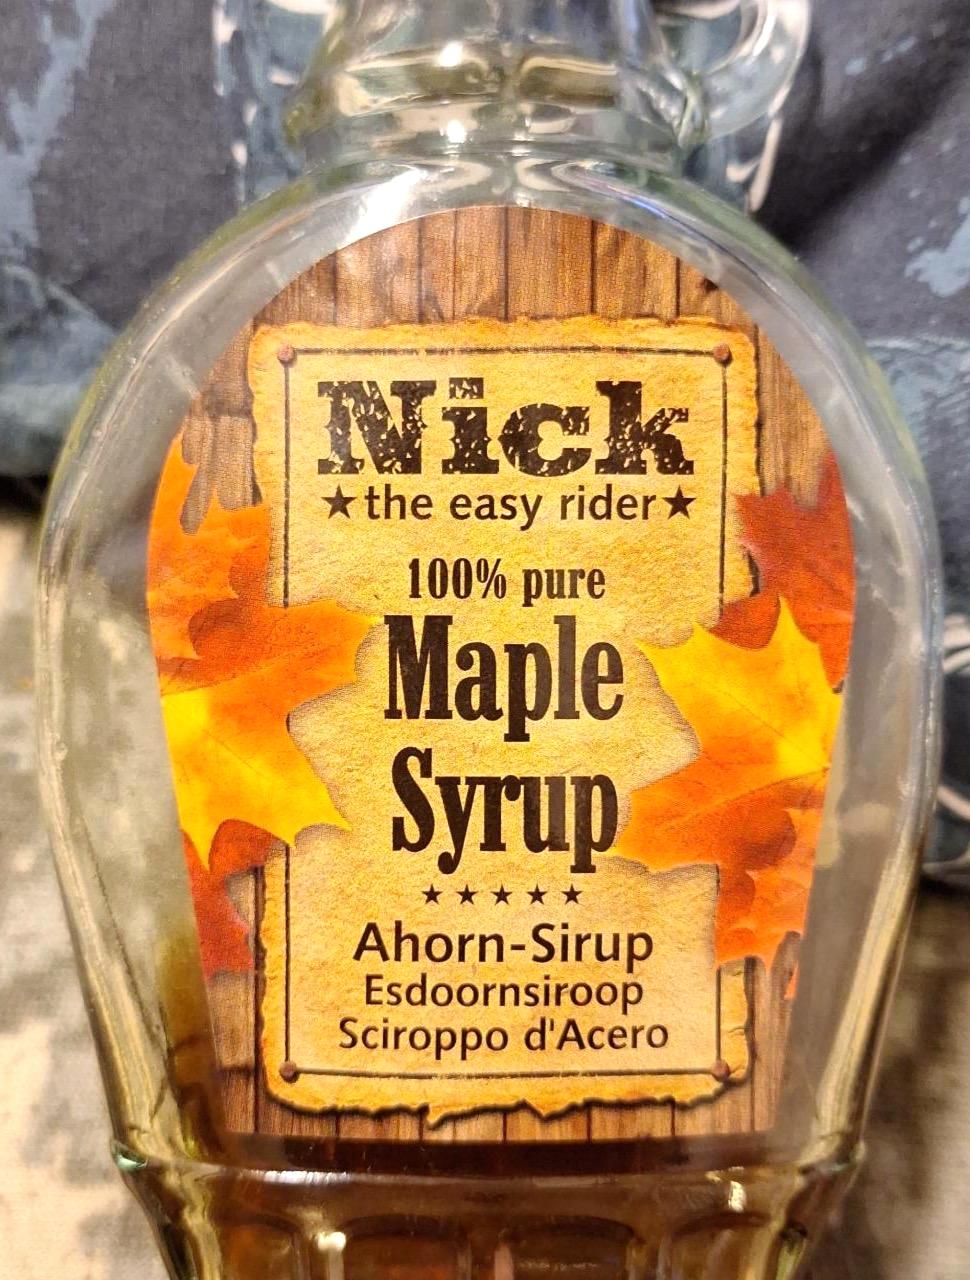 Képek - Maple syrup Nick